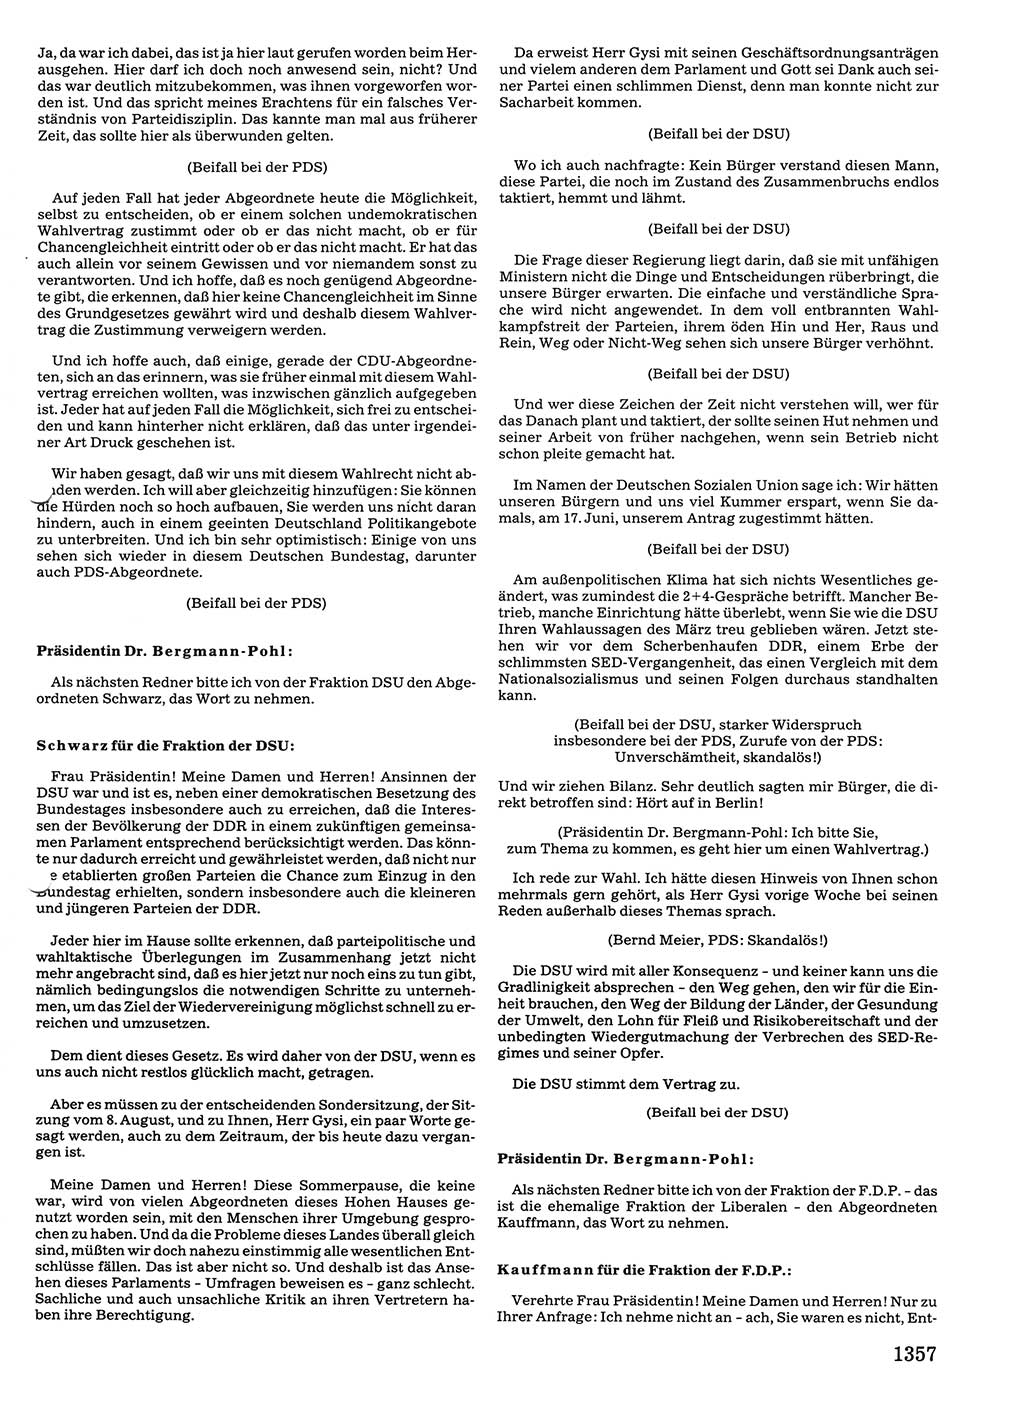 Tagungen der Volkskammer (VK) der Deutschen Demokratischen Republik (DDR), 10. Wahlperiode 1990, Seite 1357 (VK. DDR 10. WP. 1990, Prot. Tg. 1-38, 5.4.-2.10.1990, S. 1357)